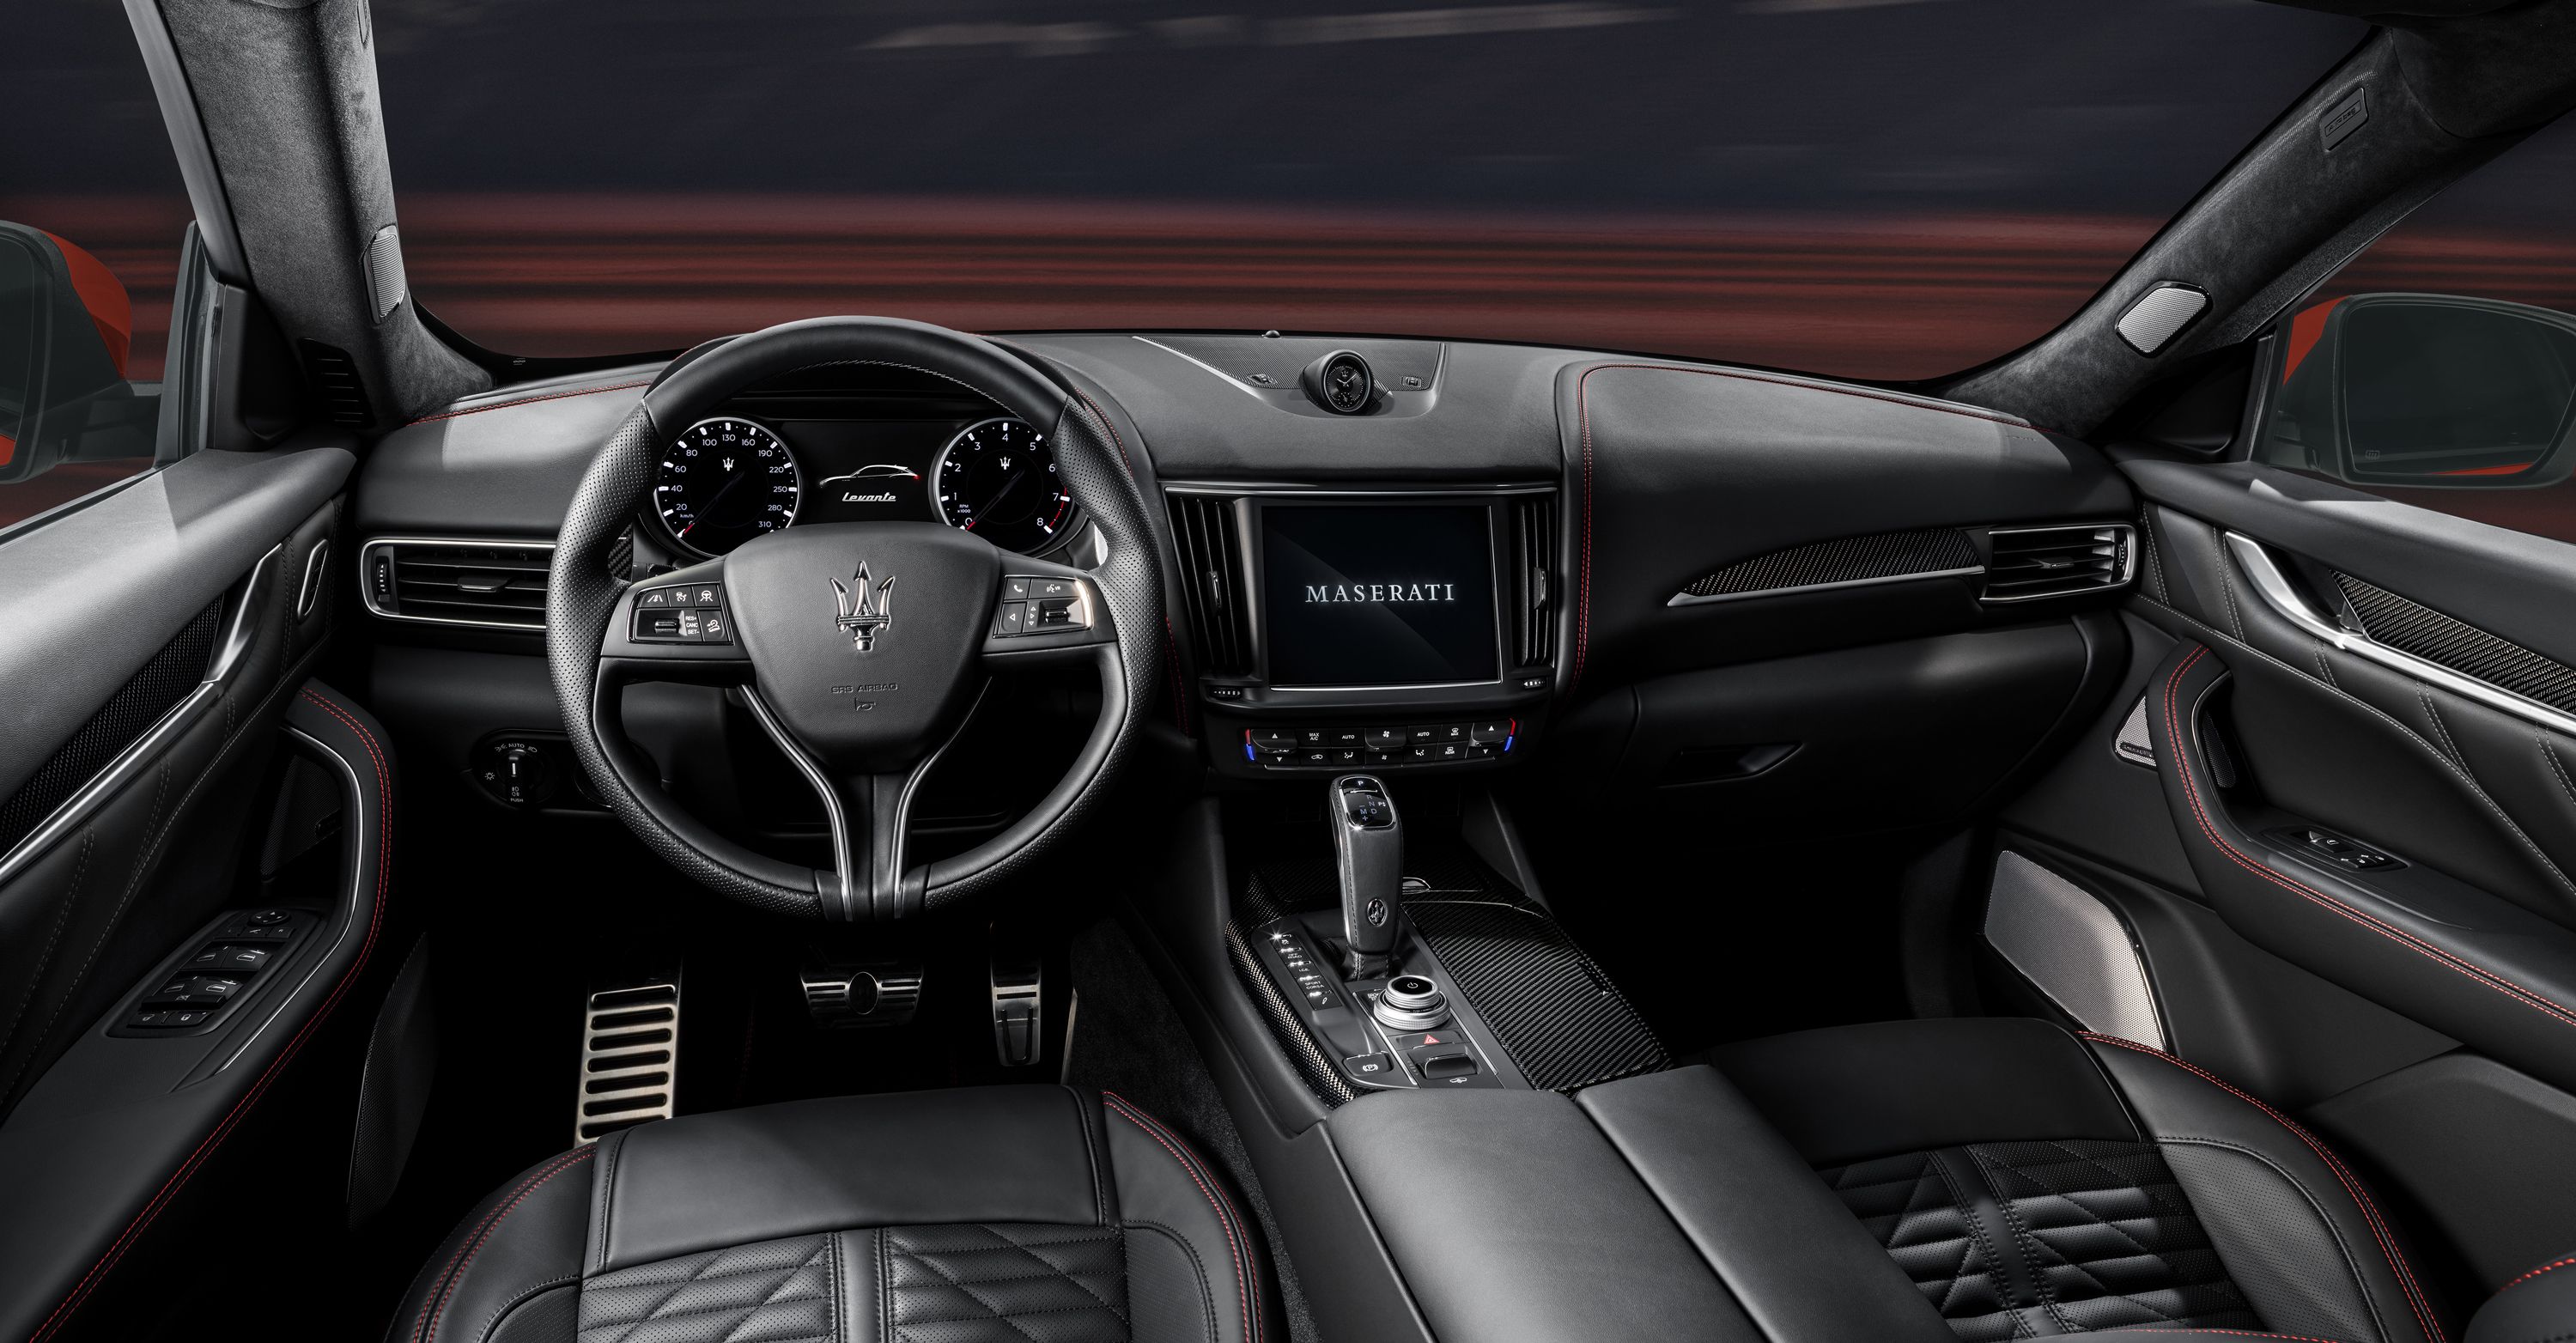 2022 Maserati Ghibli and Levante F Tributo Special Editions